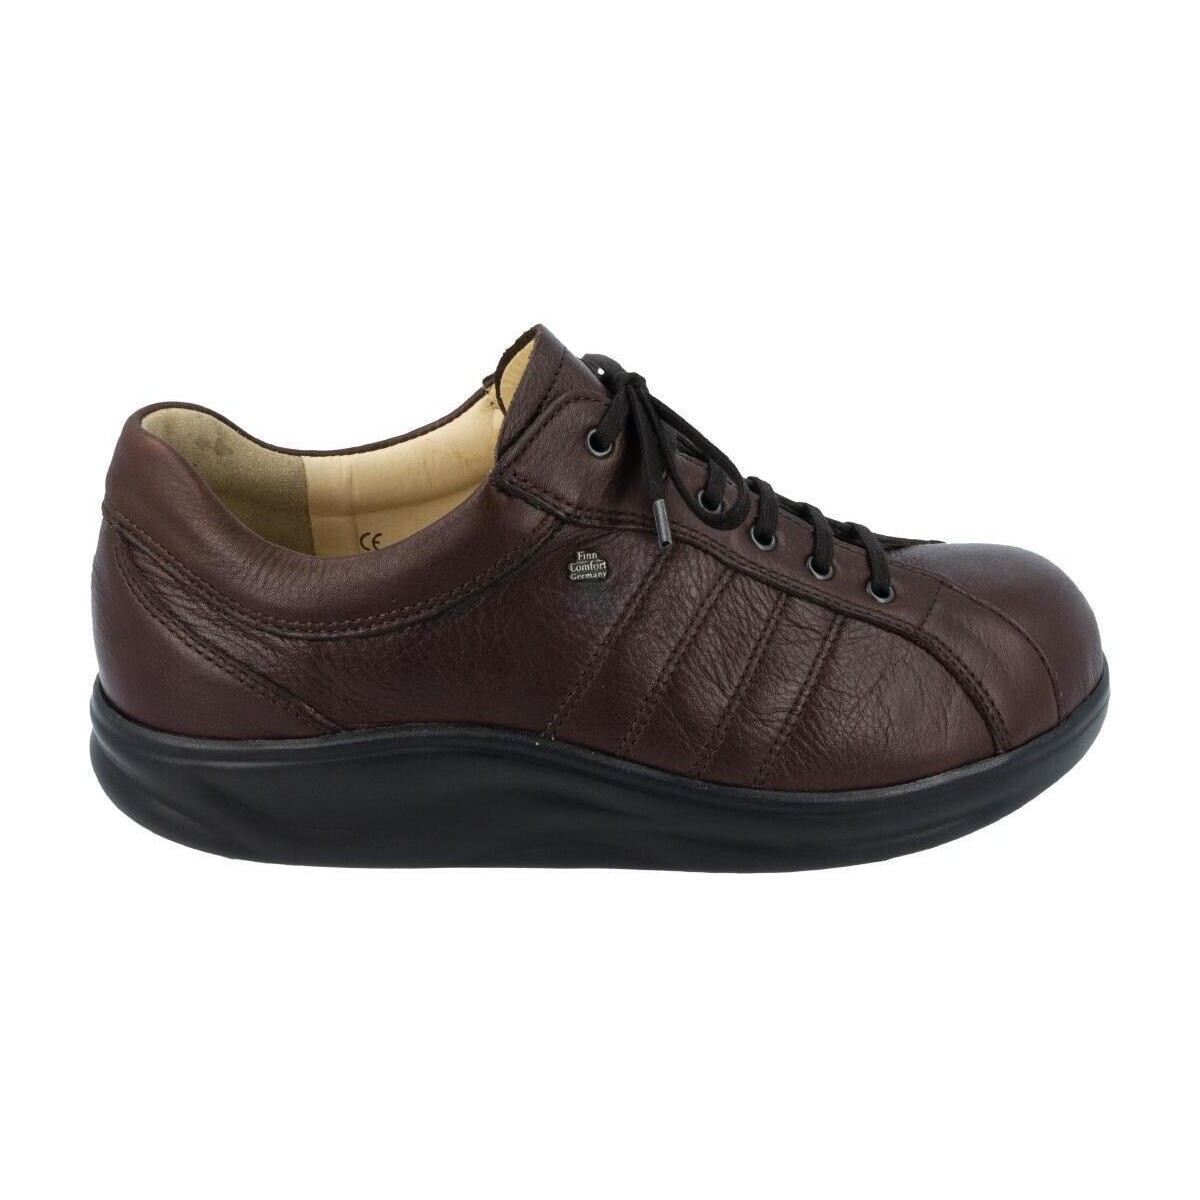 Schuhe Damen Sneaker Low Finn Comfort 2903676130 Braun